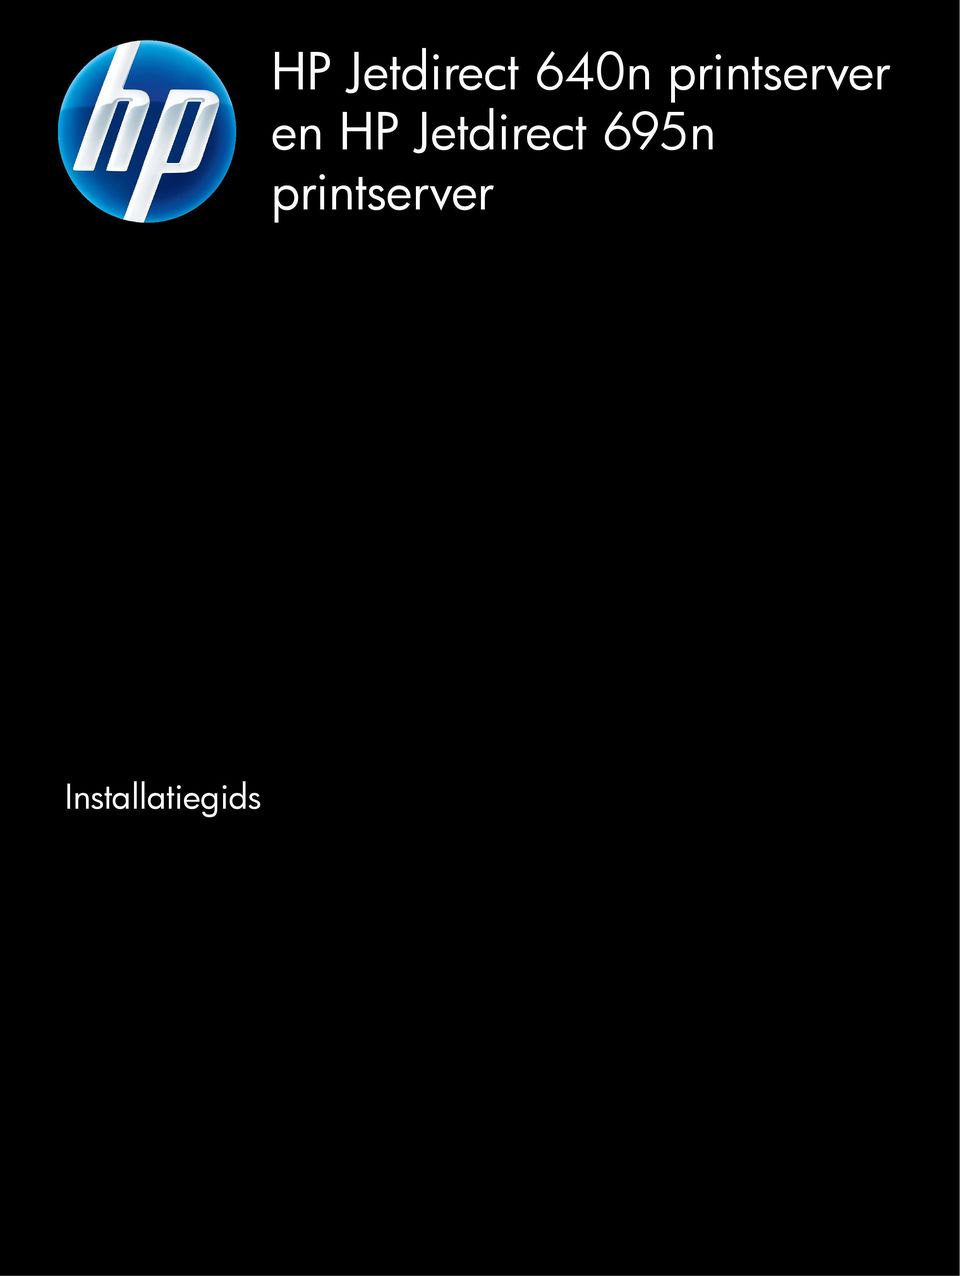 printserver en HP